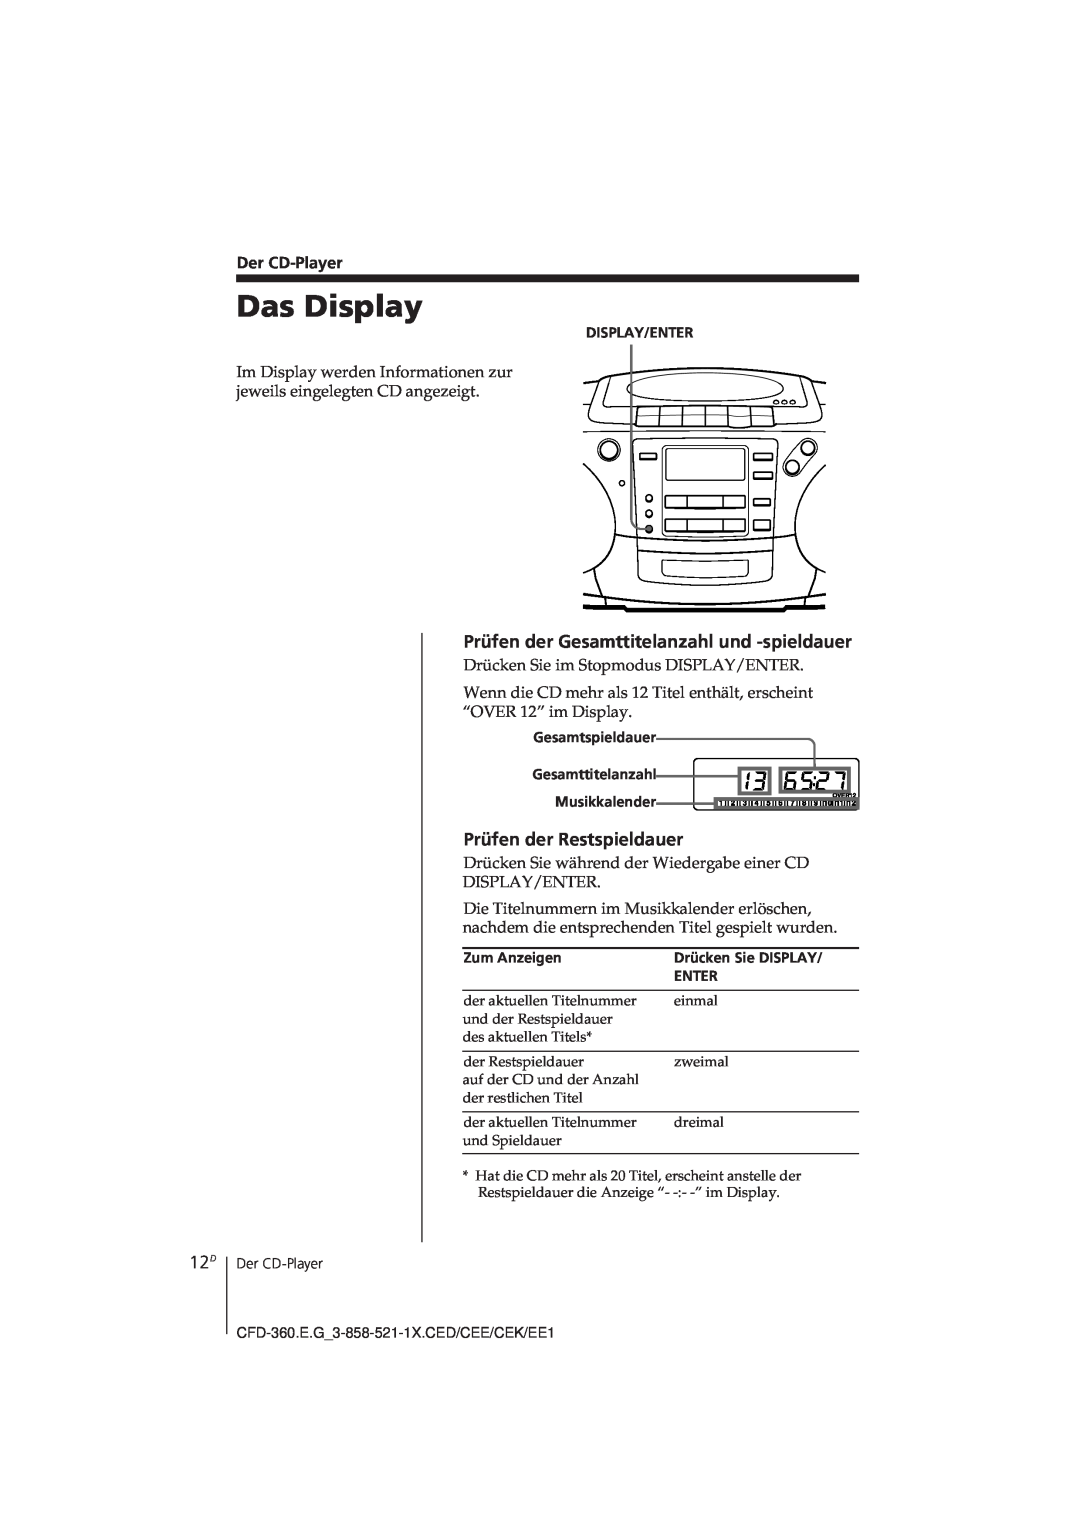 Sony CFD-360 operating instructions Das Display, Prüfen der Gesamttitelanzahl und -spieldauer, Prüfen der Restspieldauer 